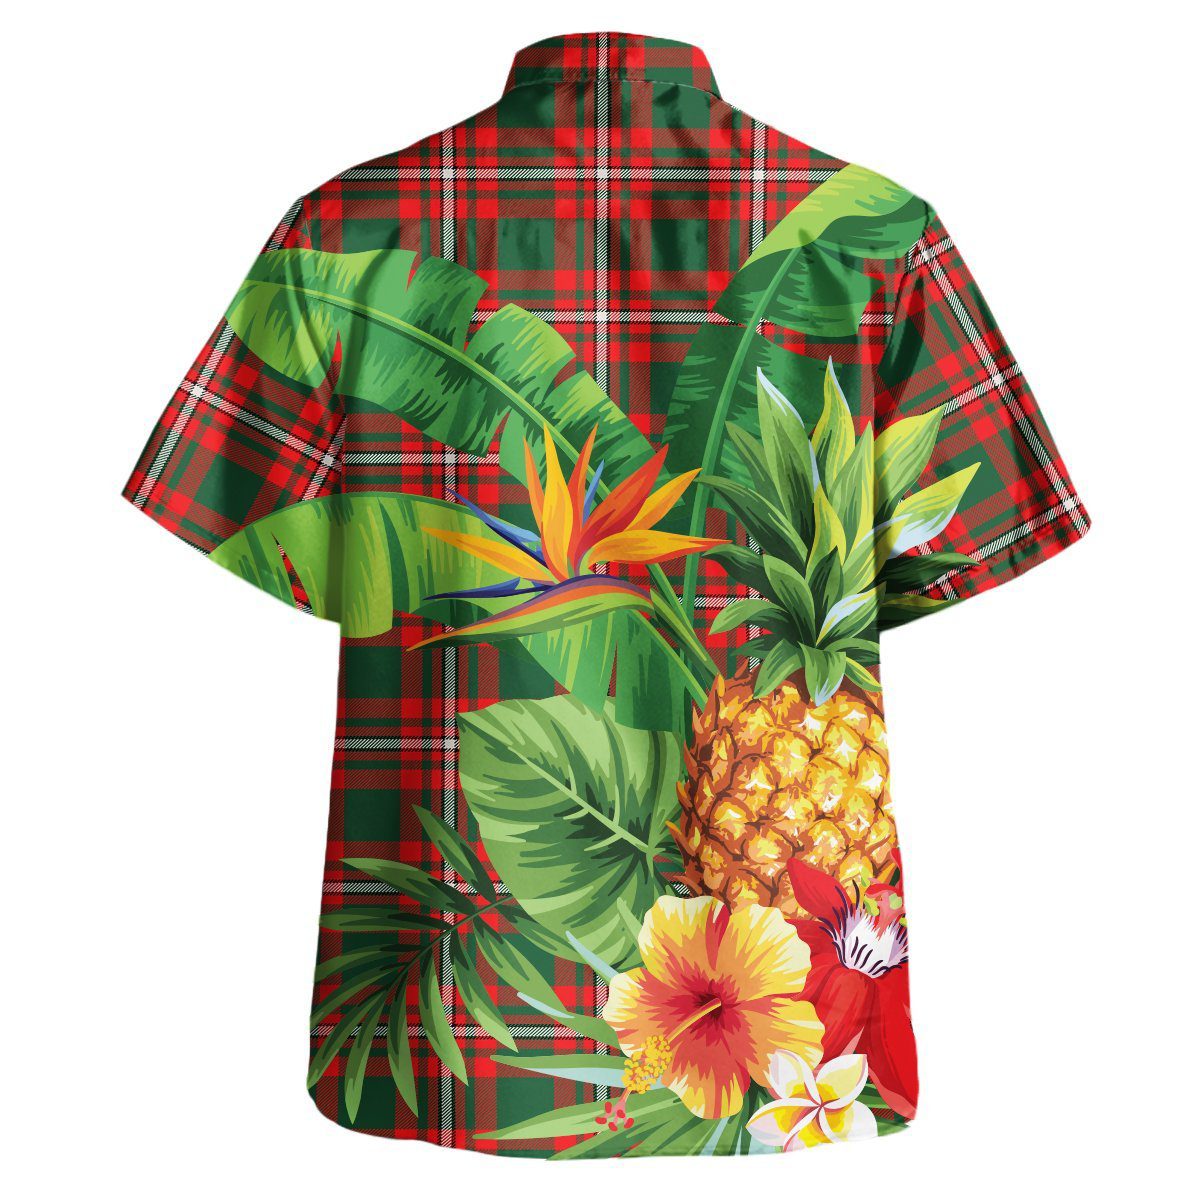 Princess Margaret Tartan Aloha Shirt version 2